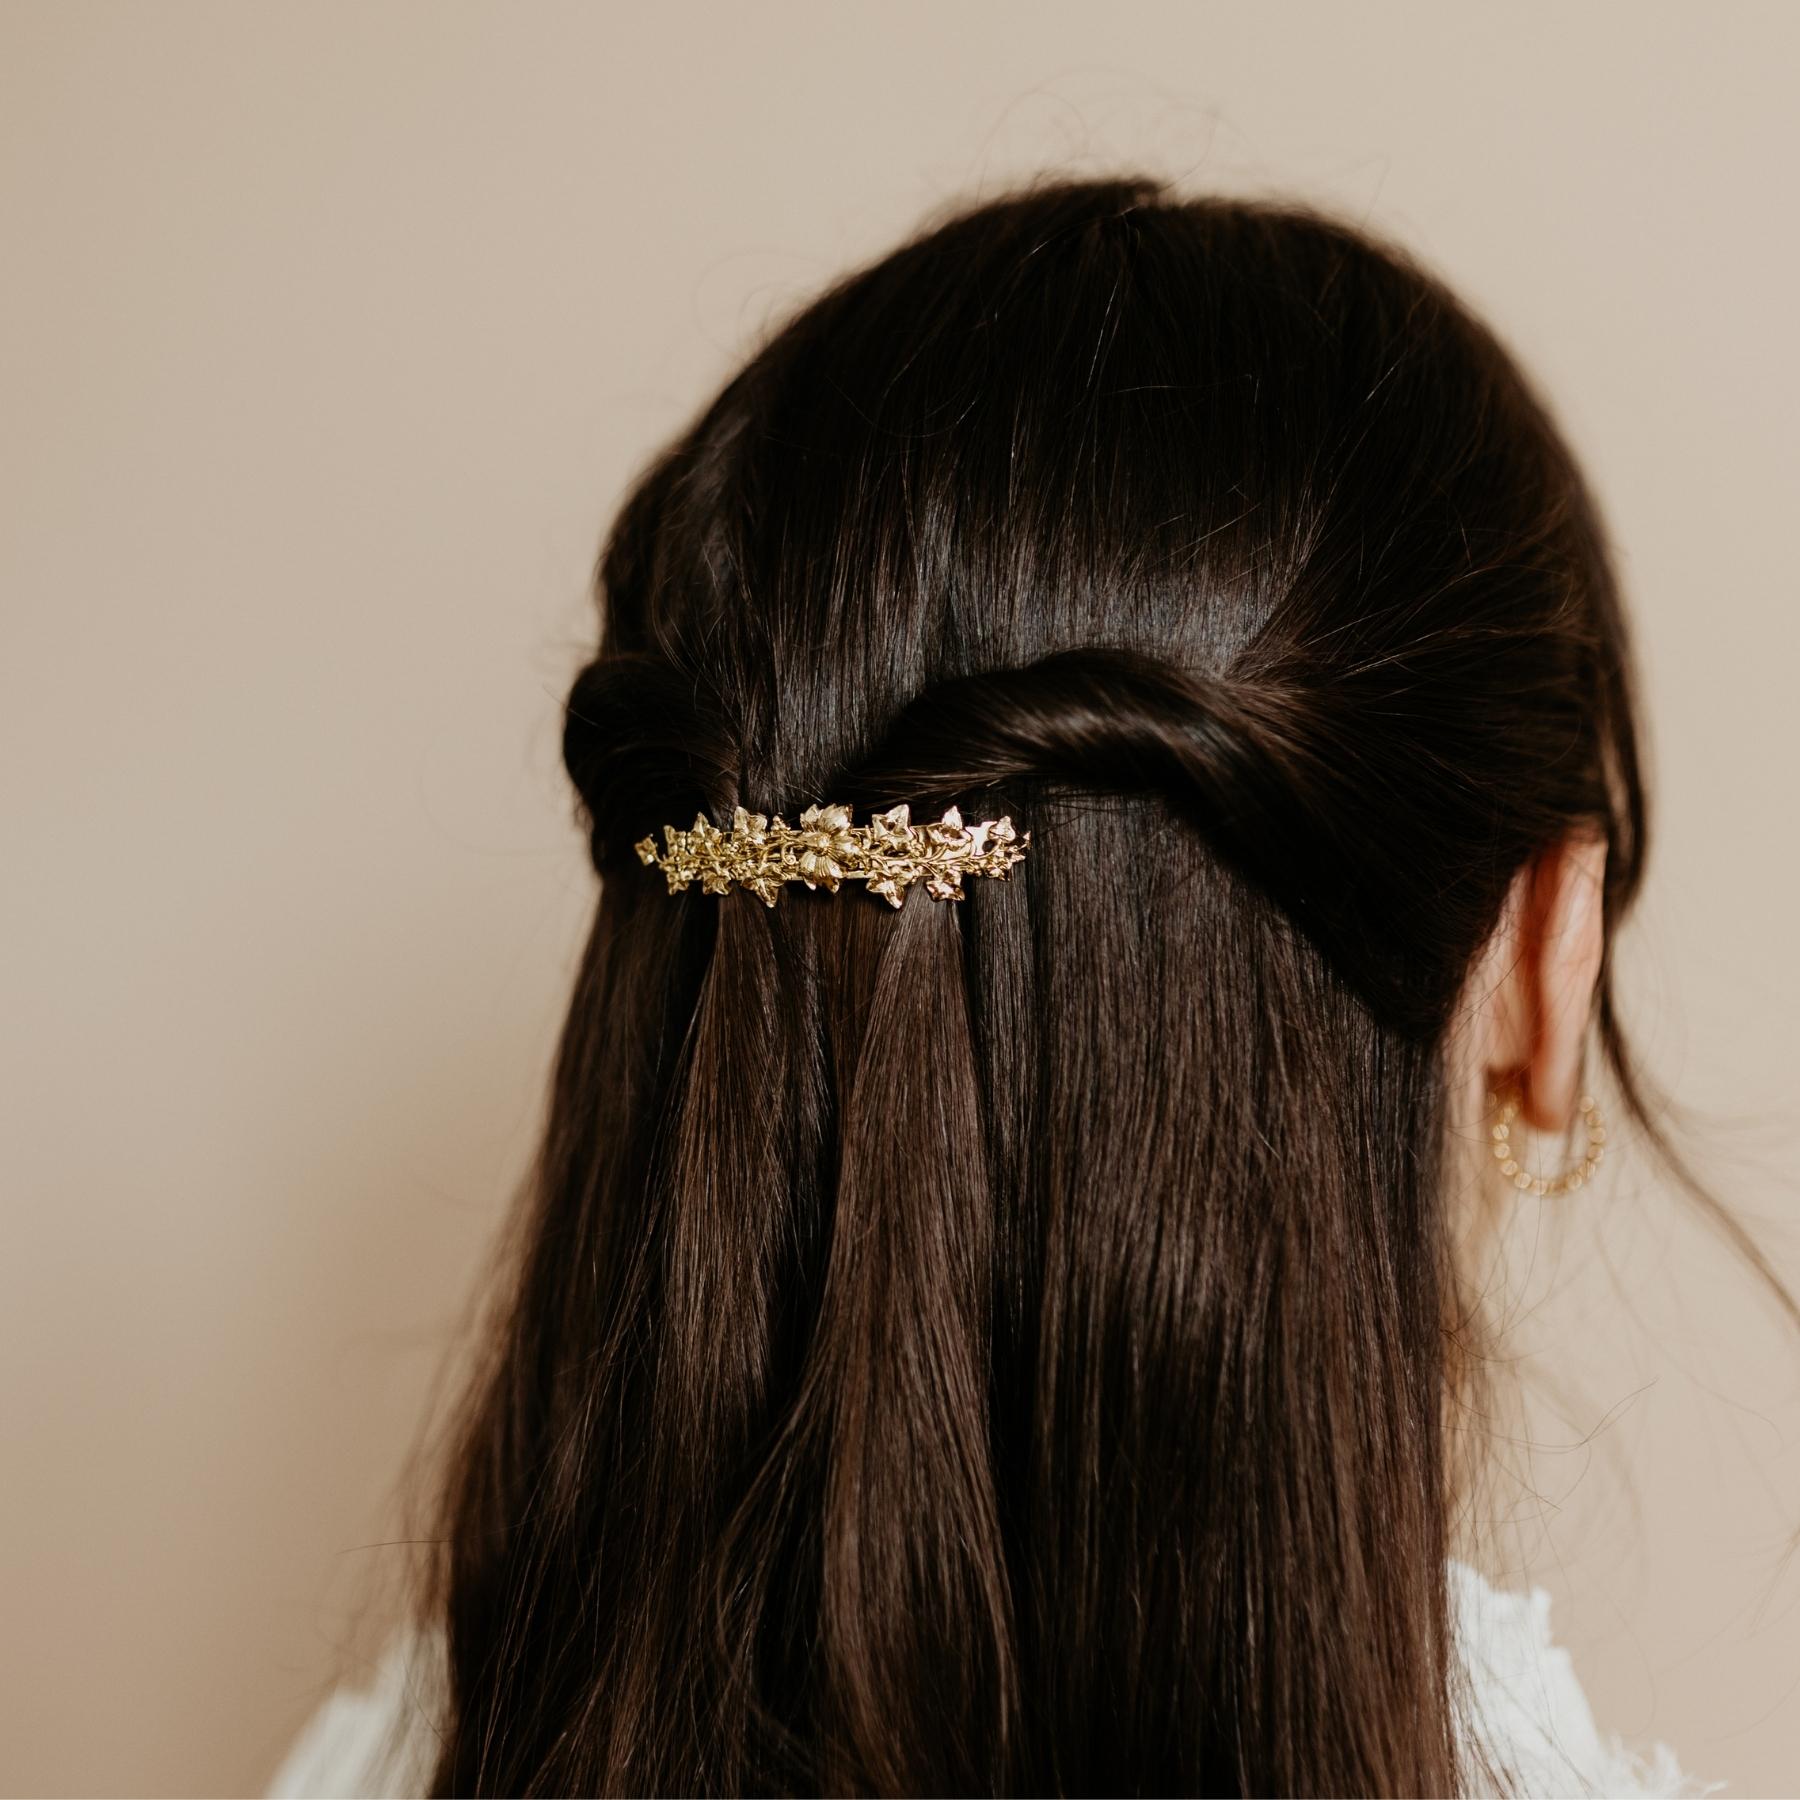 Coiffure ornée d'une barrette cheveux fleurs dorée luxe 